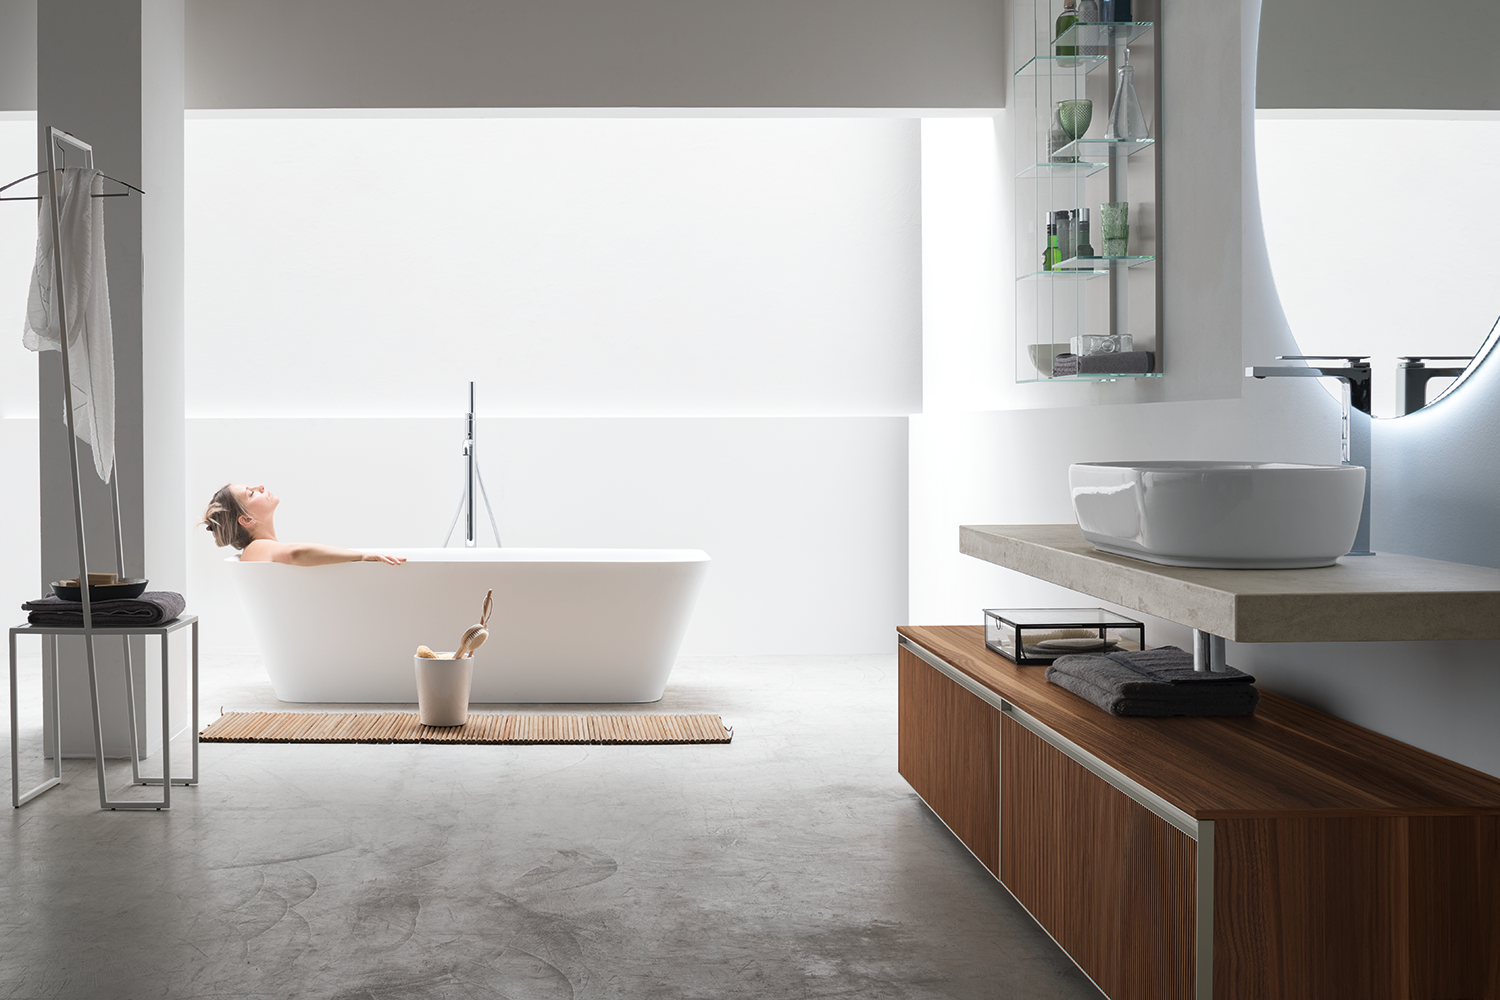 Ispirazioni hygge bagno nordico persona immersa nel relax di una vasca freestanding